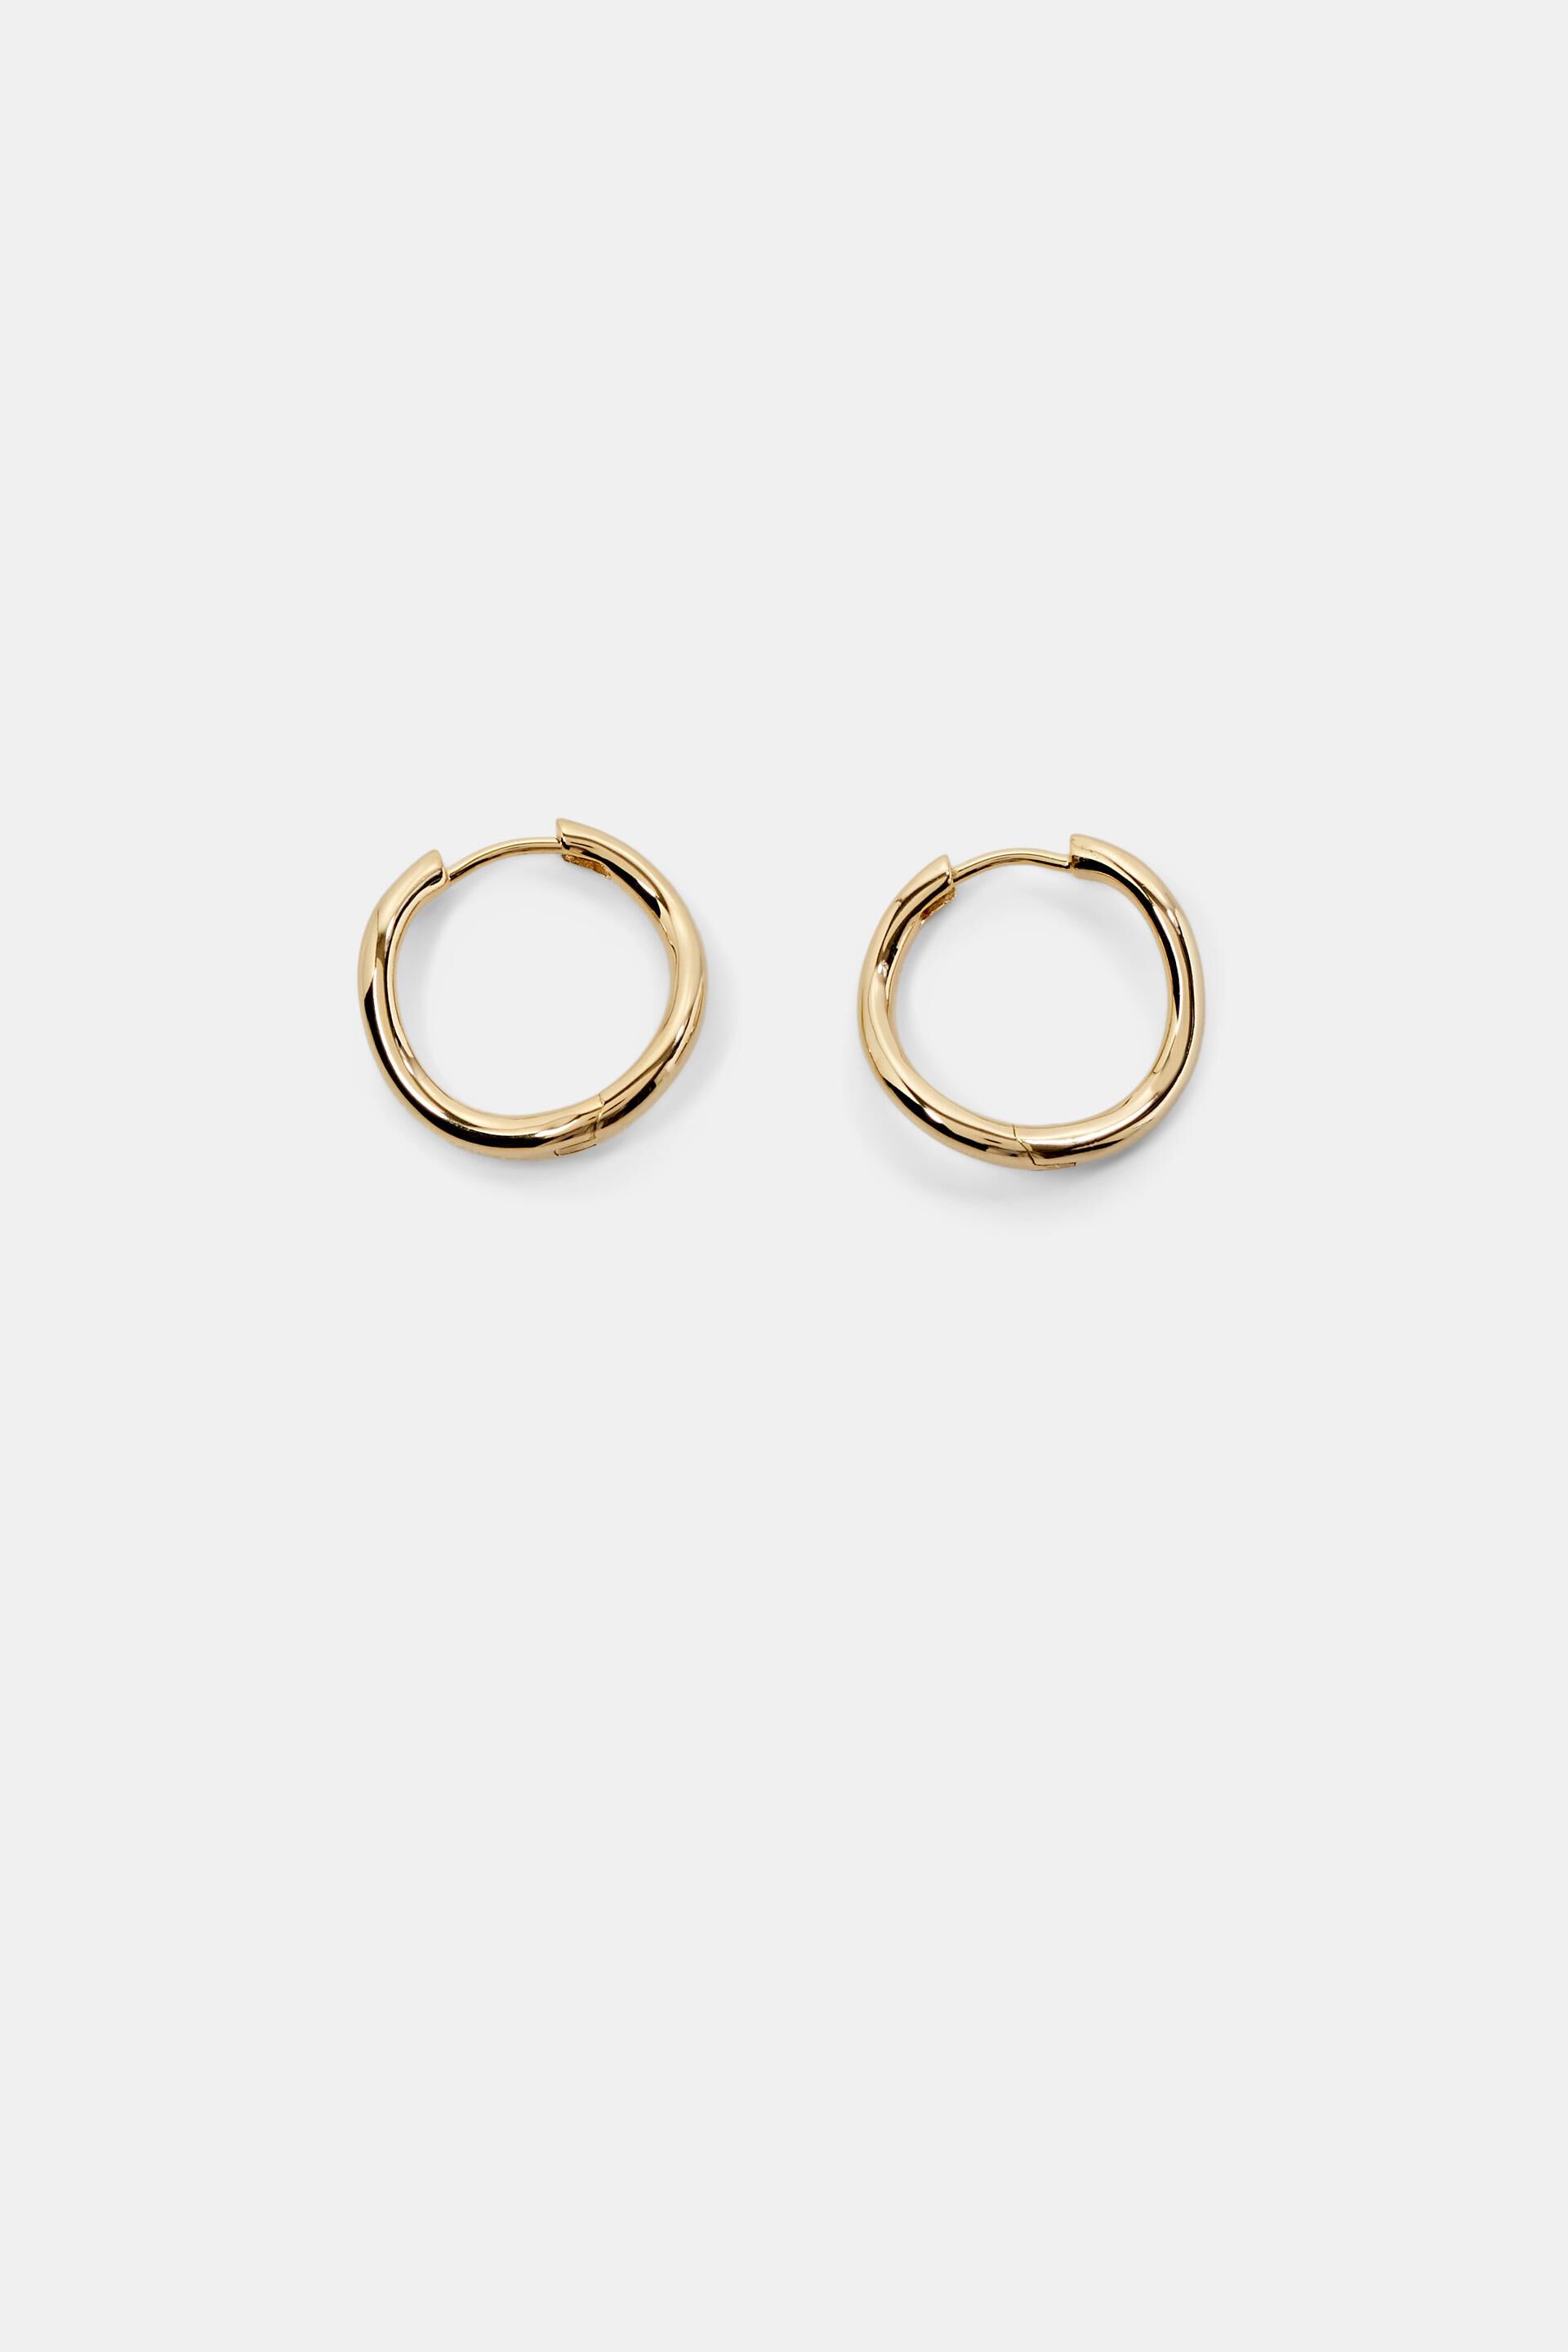 Esprit Online Store 18K Gold-Plated Wave Hoop Earrings